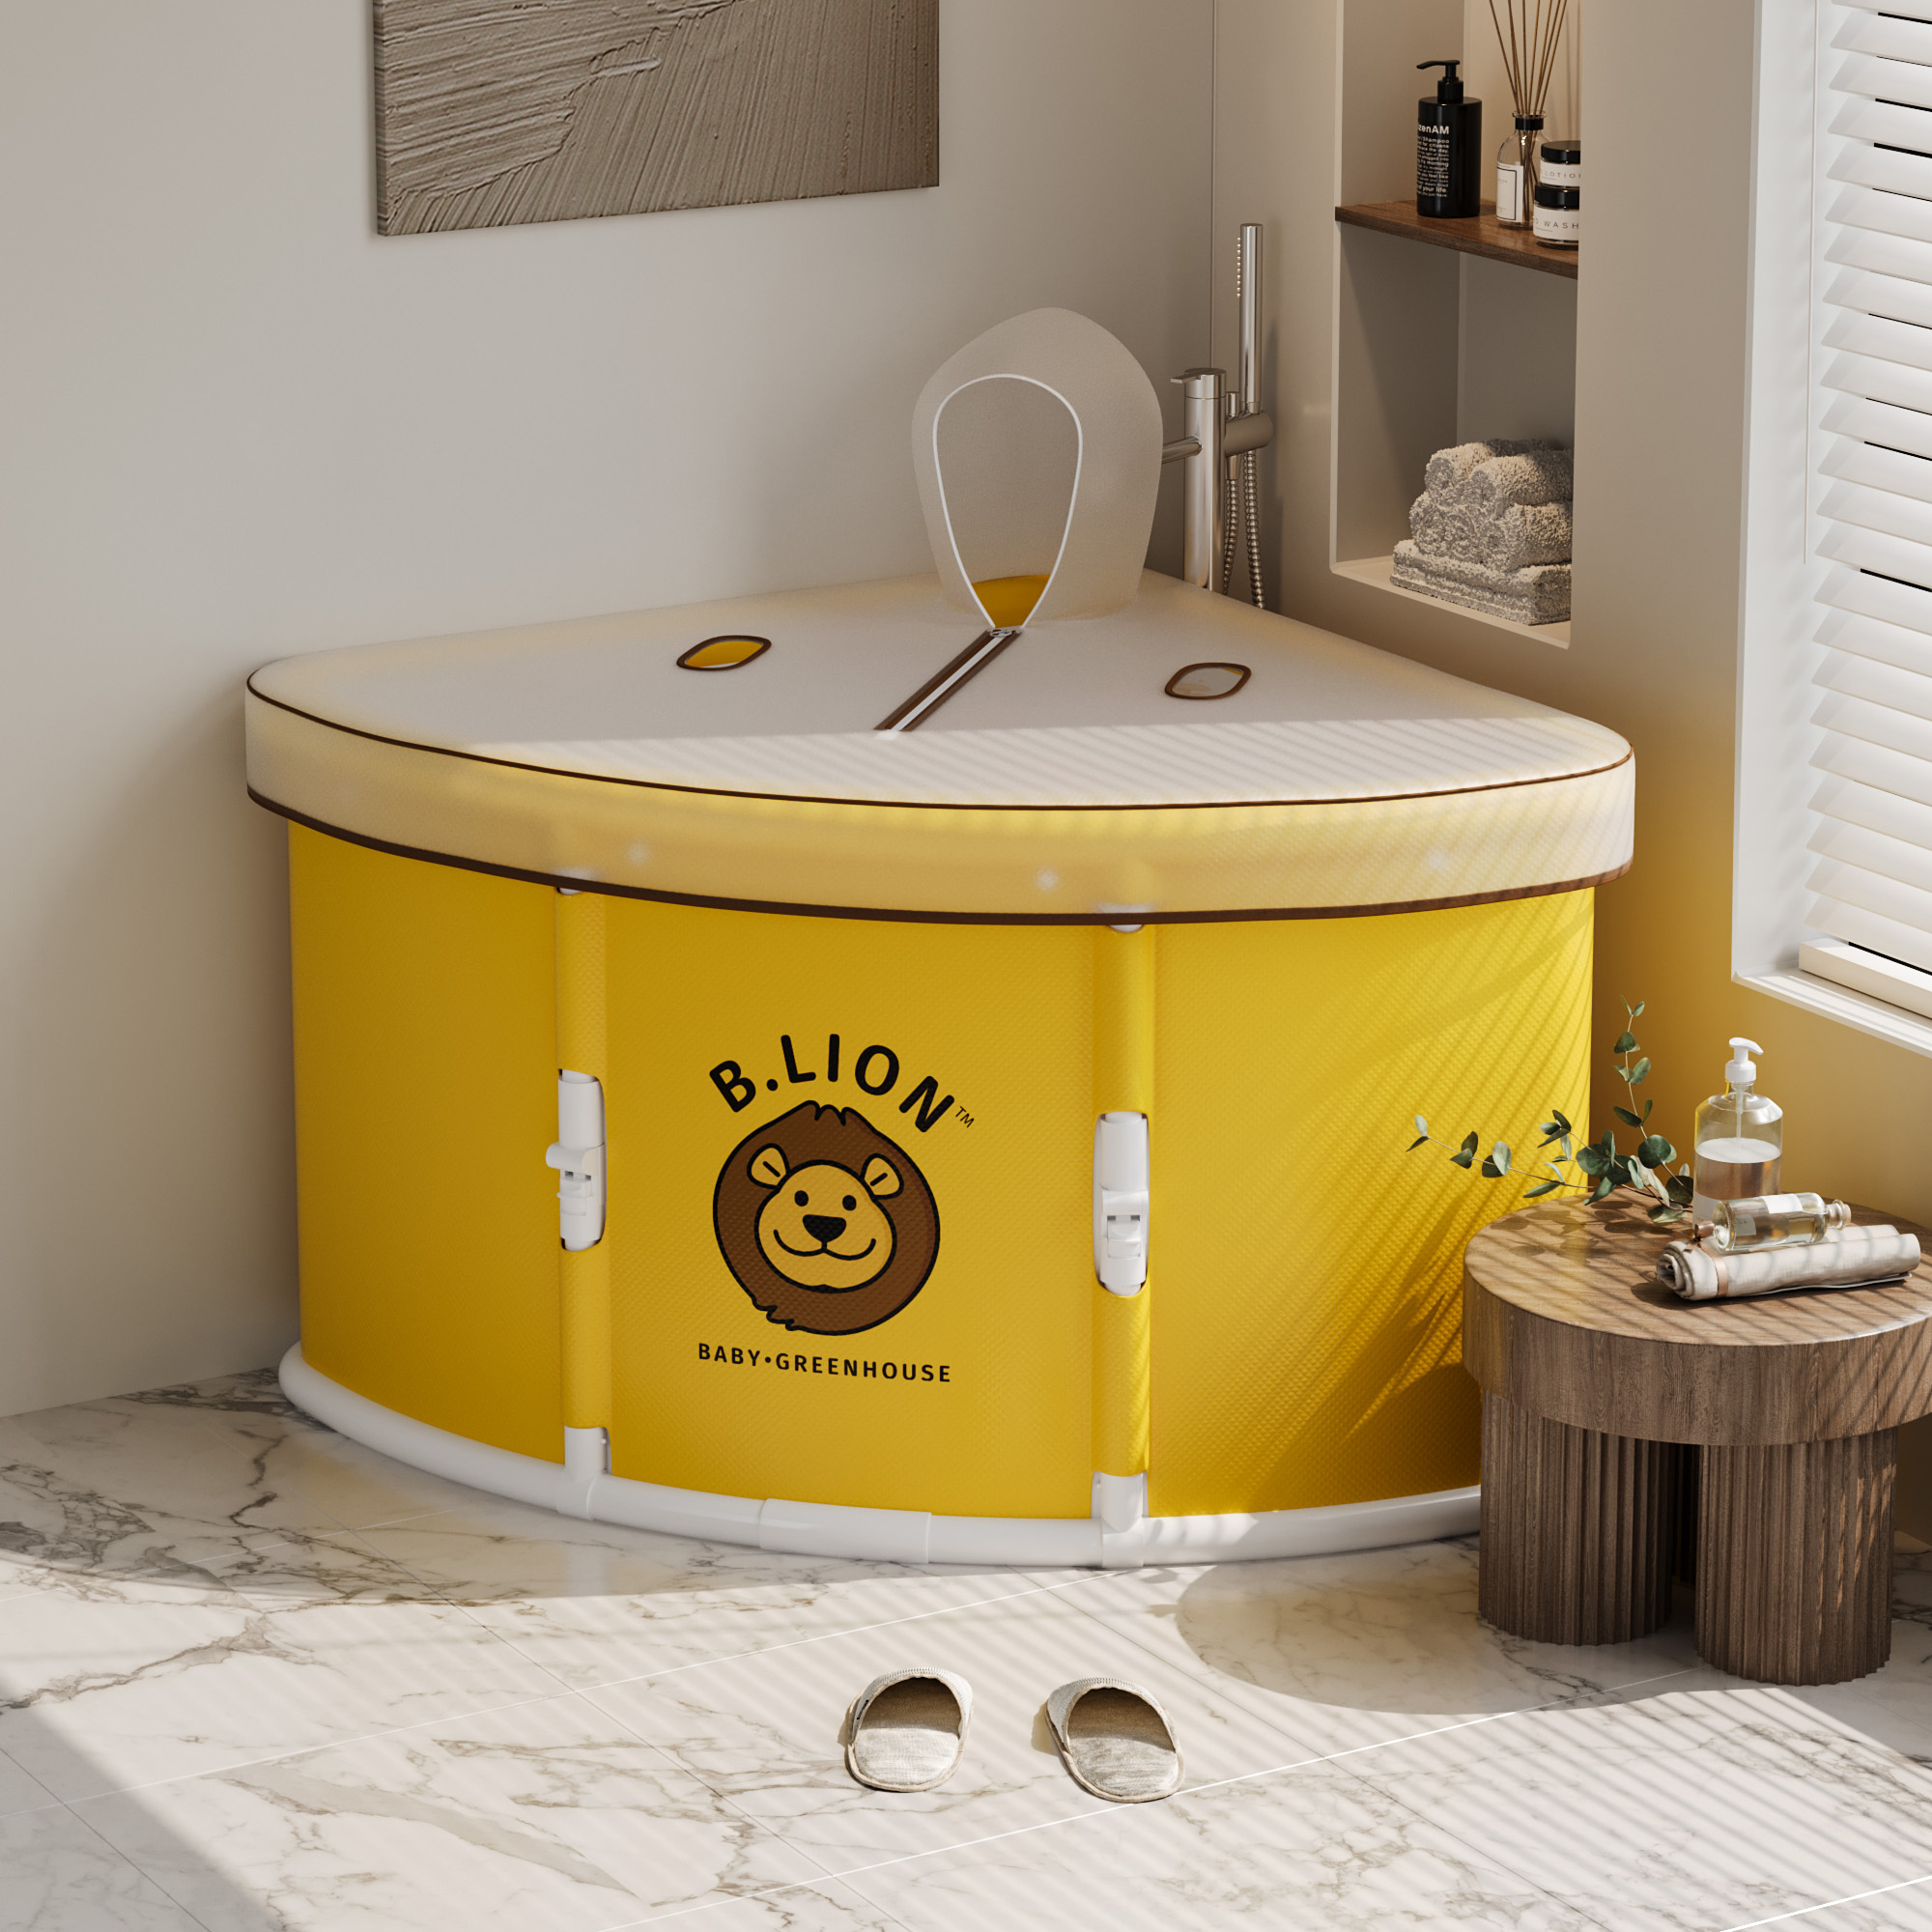 三角扇形浴缸免安装折叠泡澡桶淋浴房专用加厚保温沐浴桶折叠浴缸